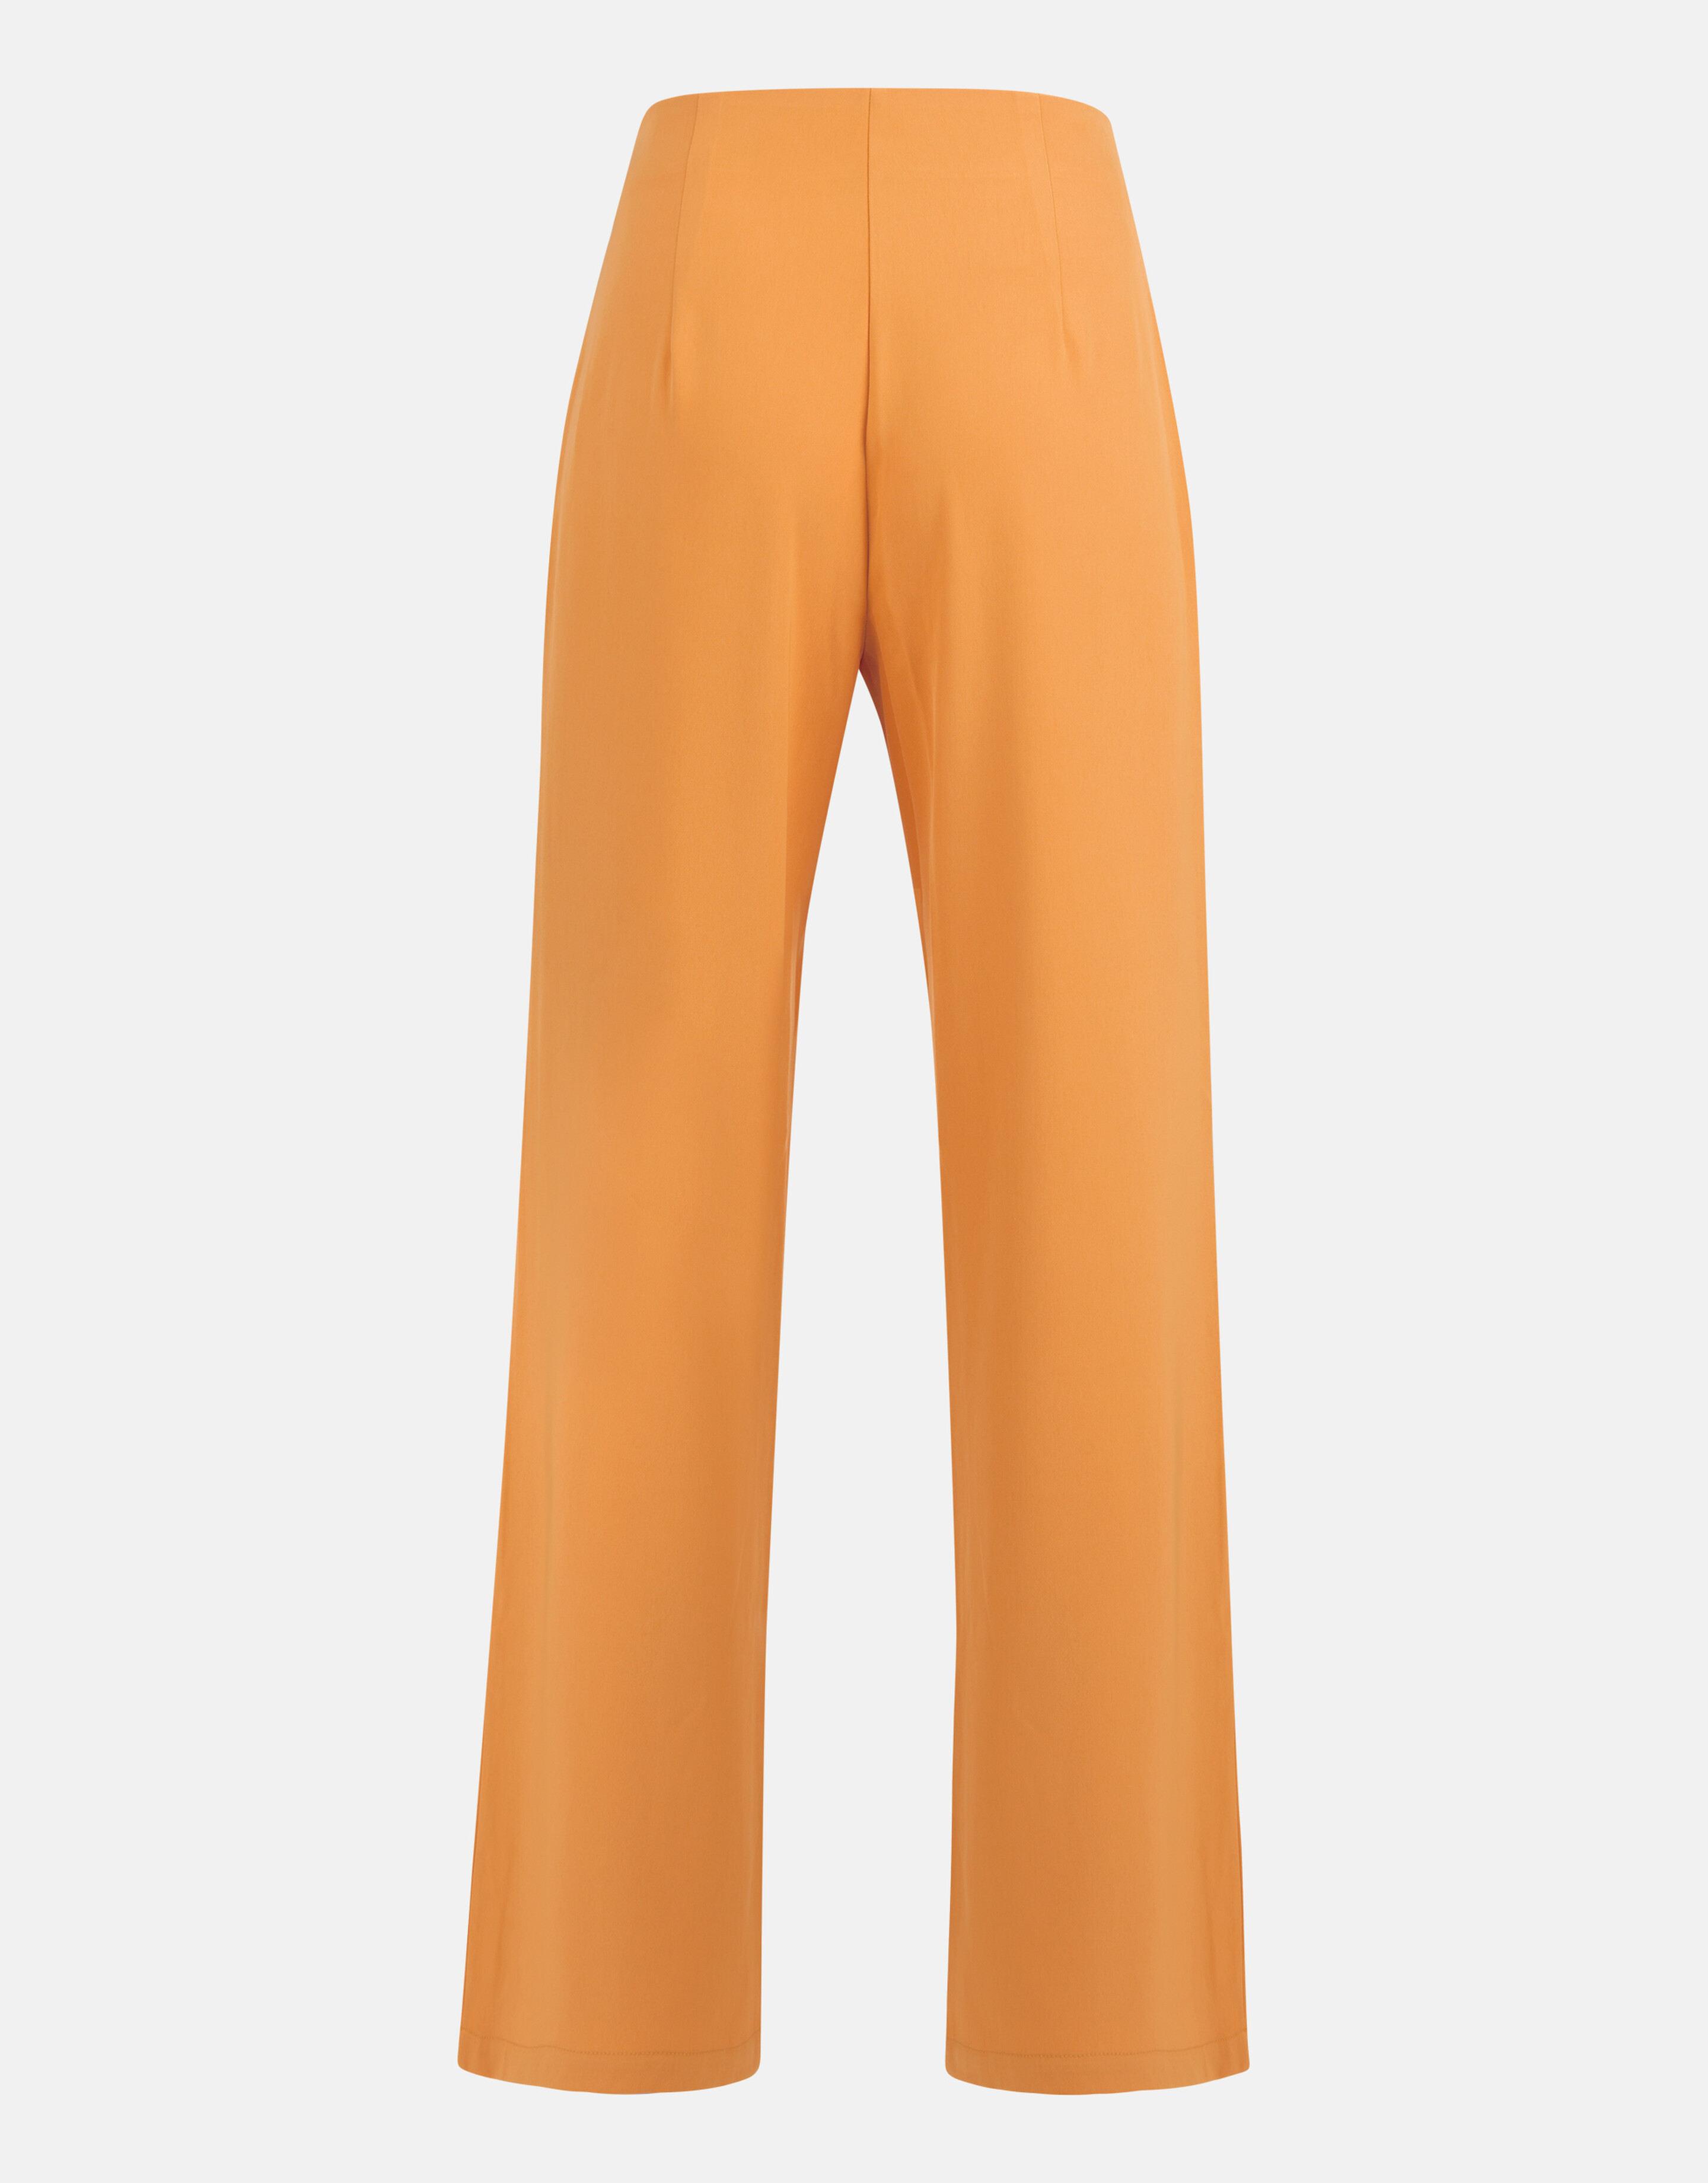 Loose Fit Pantalon Oranje By Mieke SHOEBY WOMEN